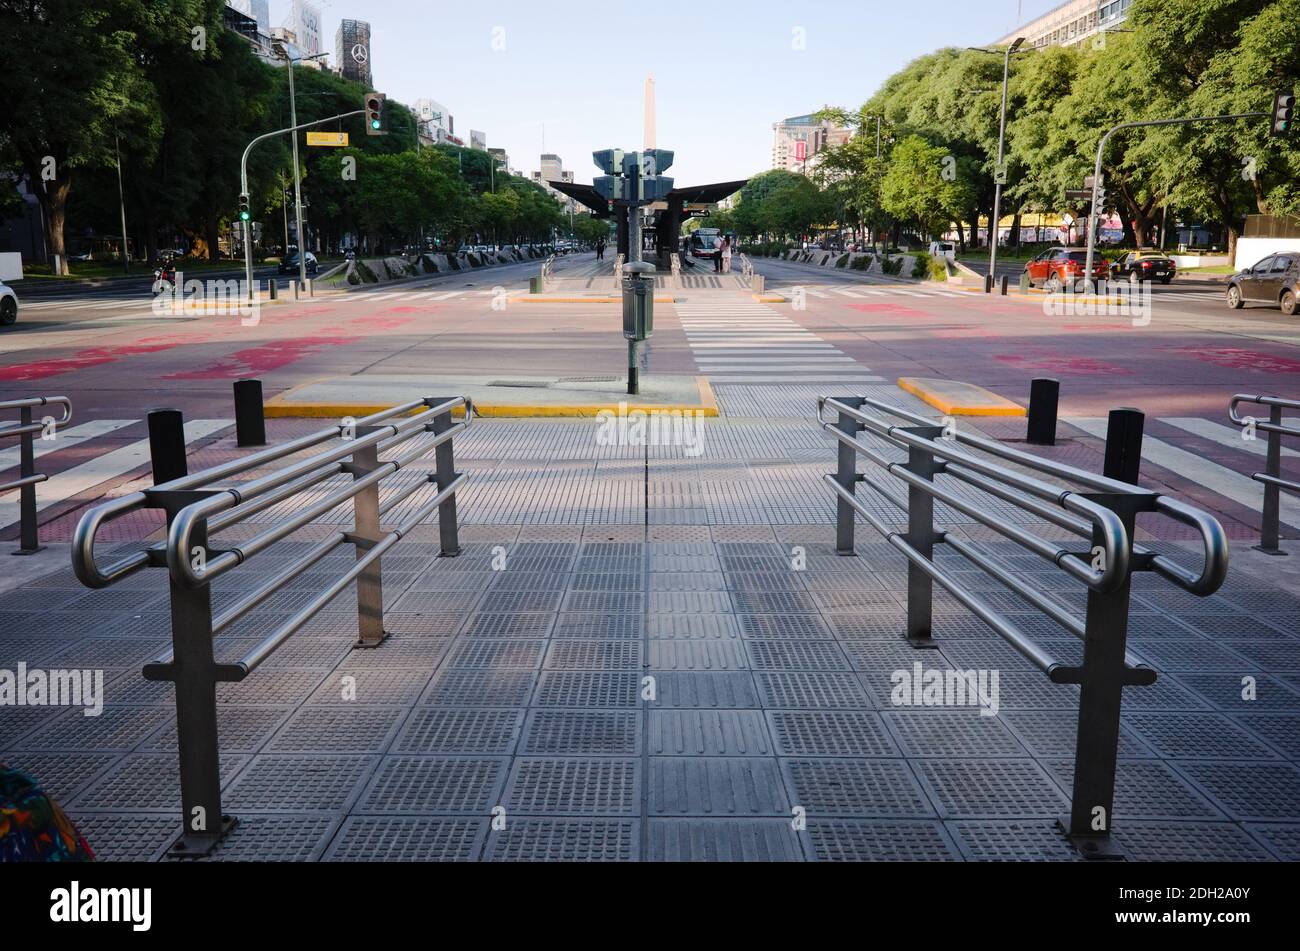 Buenos Aires, Argentinien - Januar, 2020: Fußgänger mit Geländer für Behinderte auf Straßenkreuzung. Kreuzung mit Ampel Stockfoto